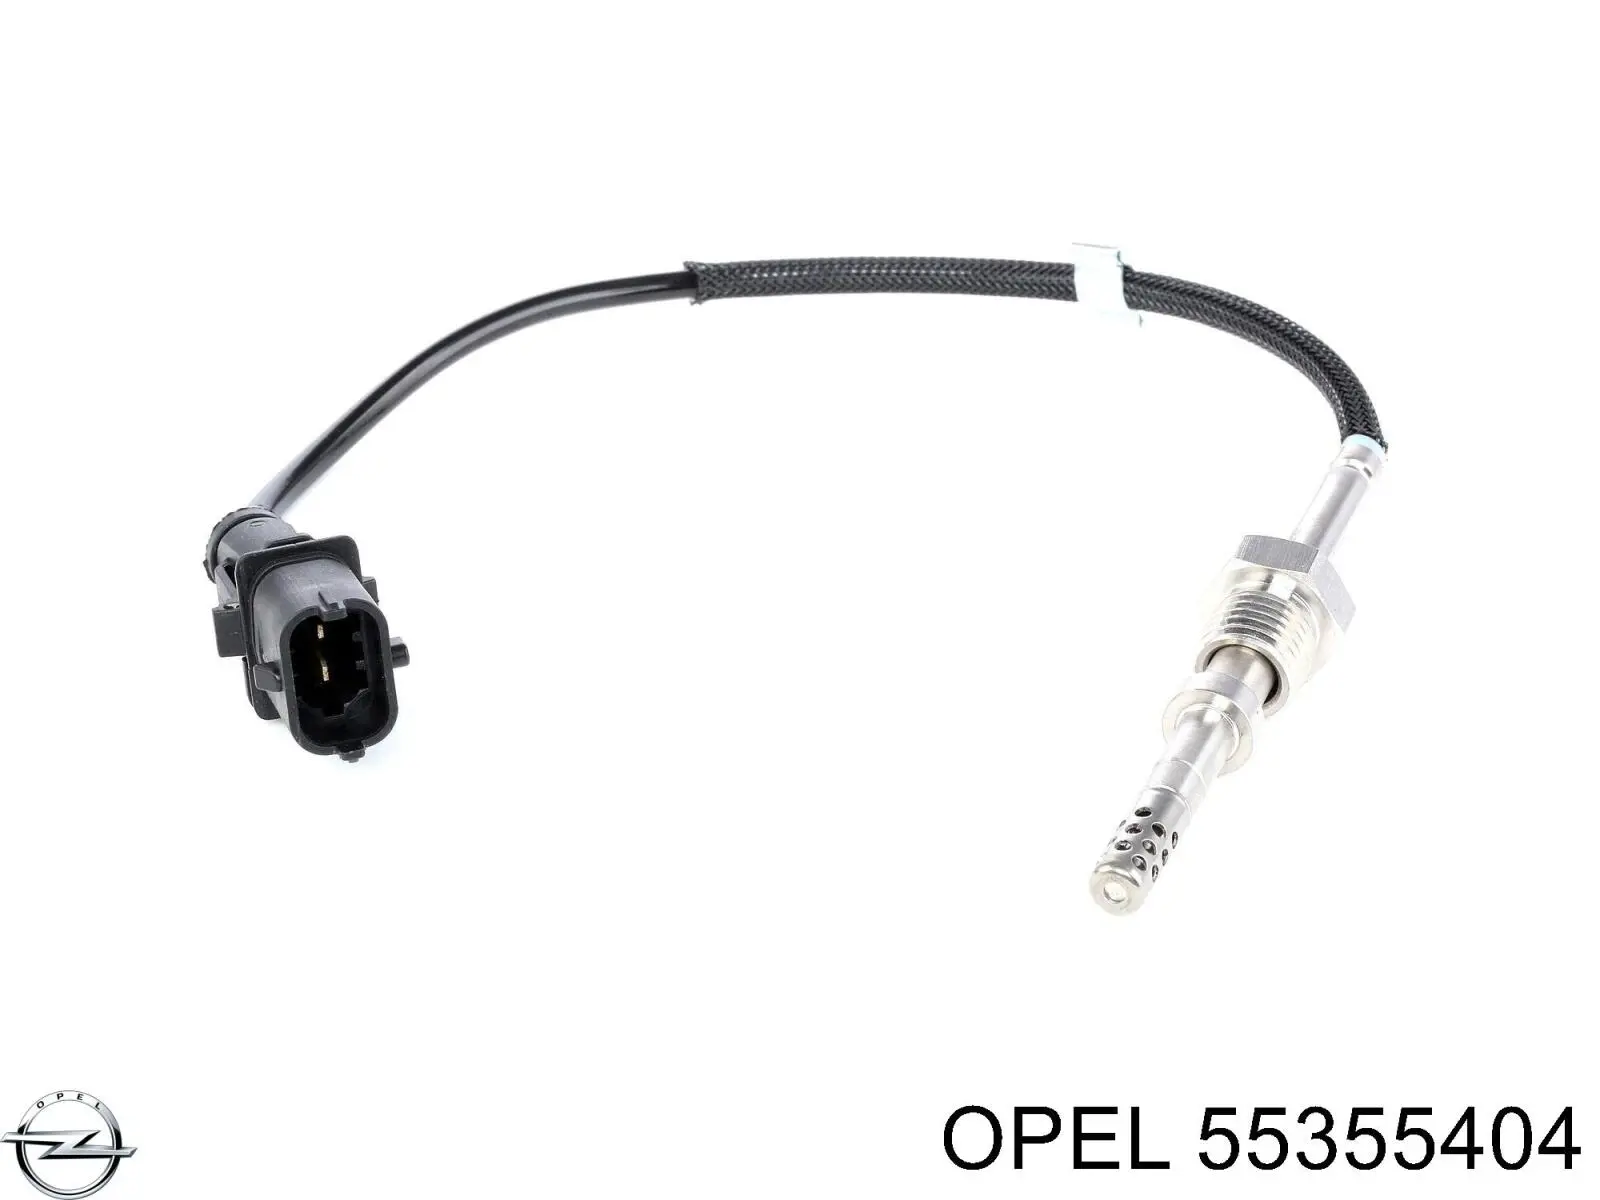 55355404 Opel sensor de temperatura, gas de escape, antes de catalizador